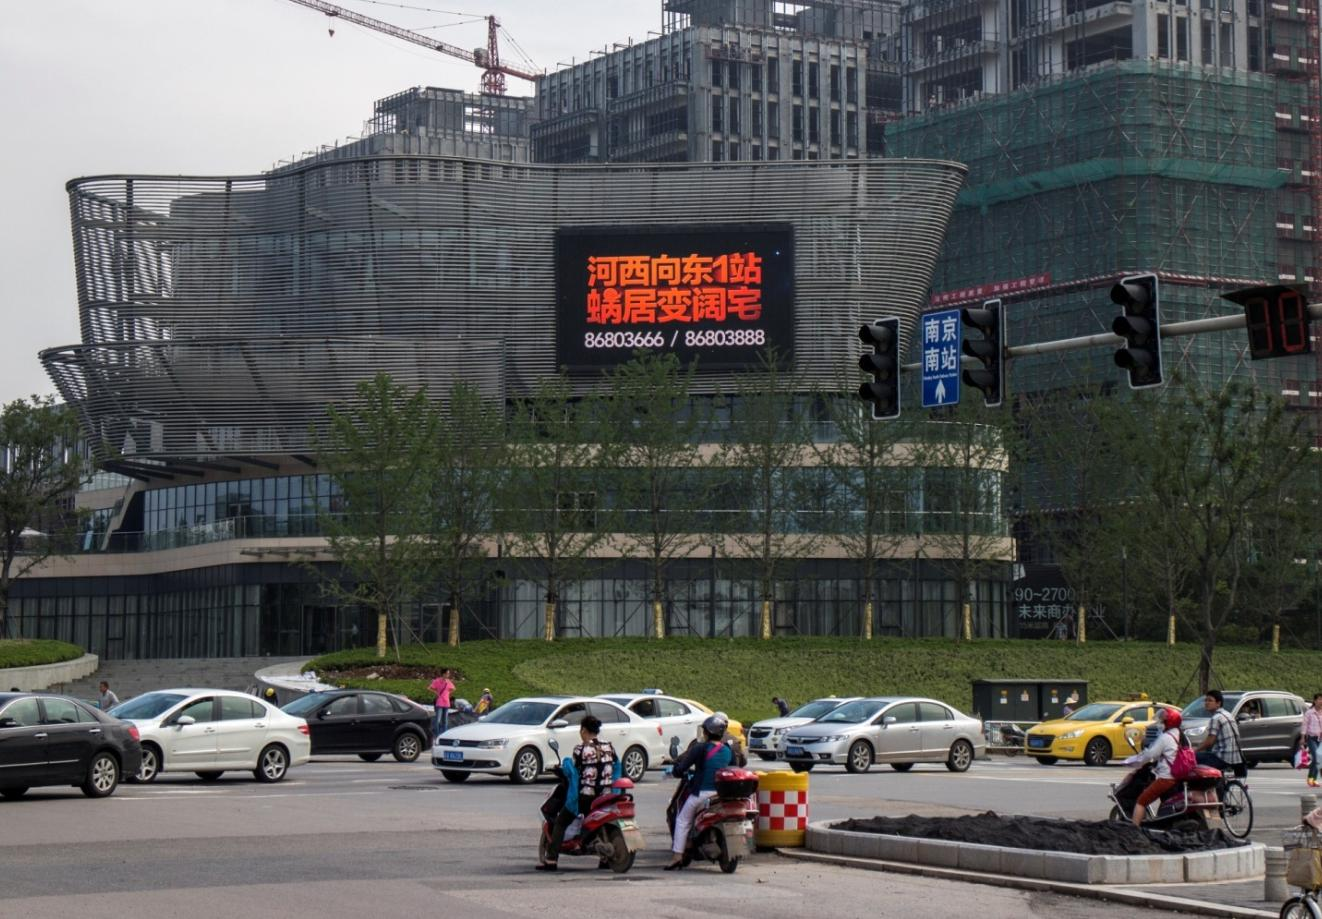 江苏南京雨花台区软件大道丰盛商汇广场街边设施LED屏